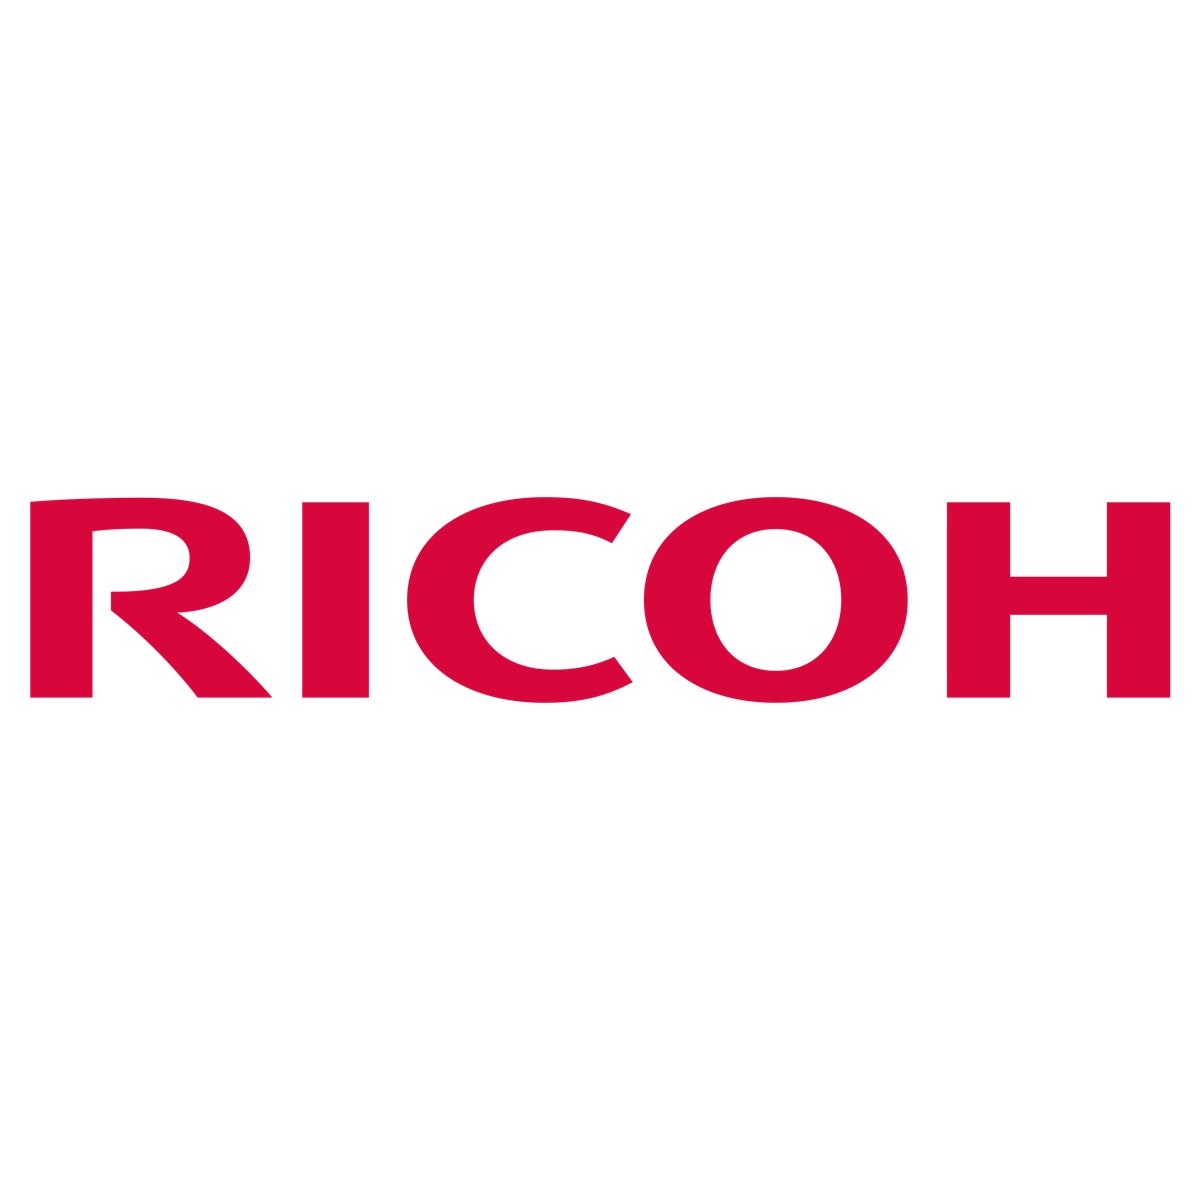 Ricoh B2242027 - Original - Ricoh - Aficio MP C-2500 Afficio MP C3000C Afficio MP C4500C - 1 pc(s) - 80000 pages - Cyan - Magent